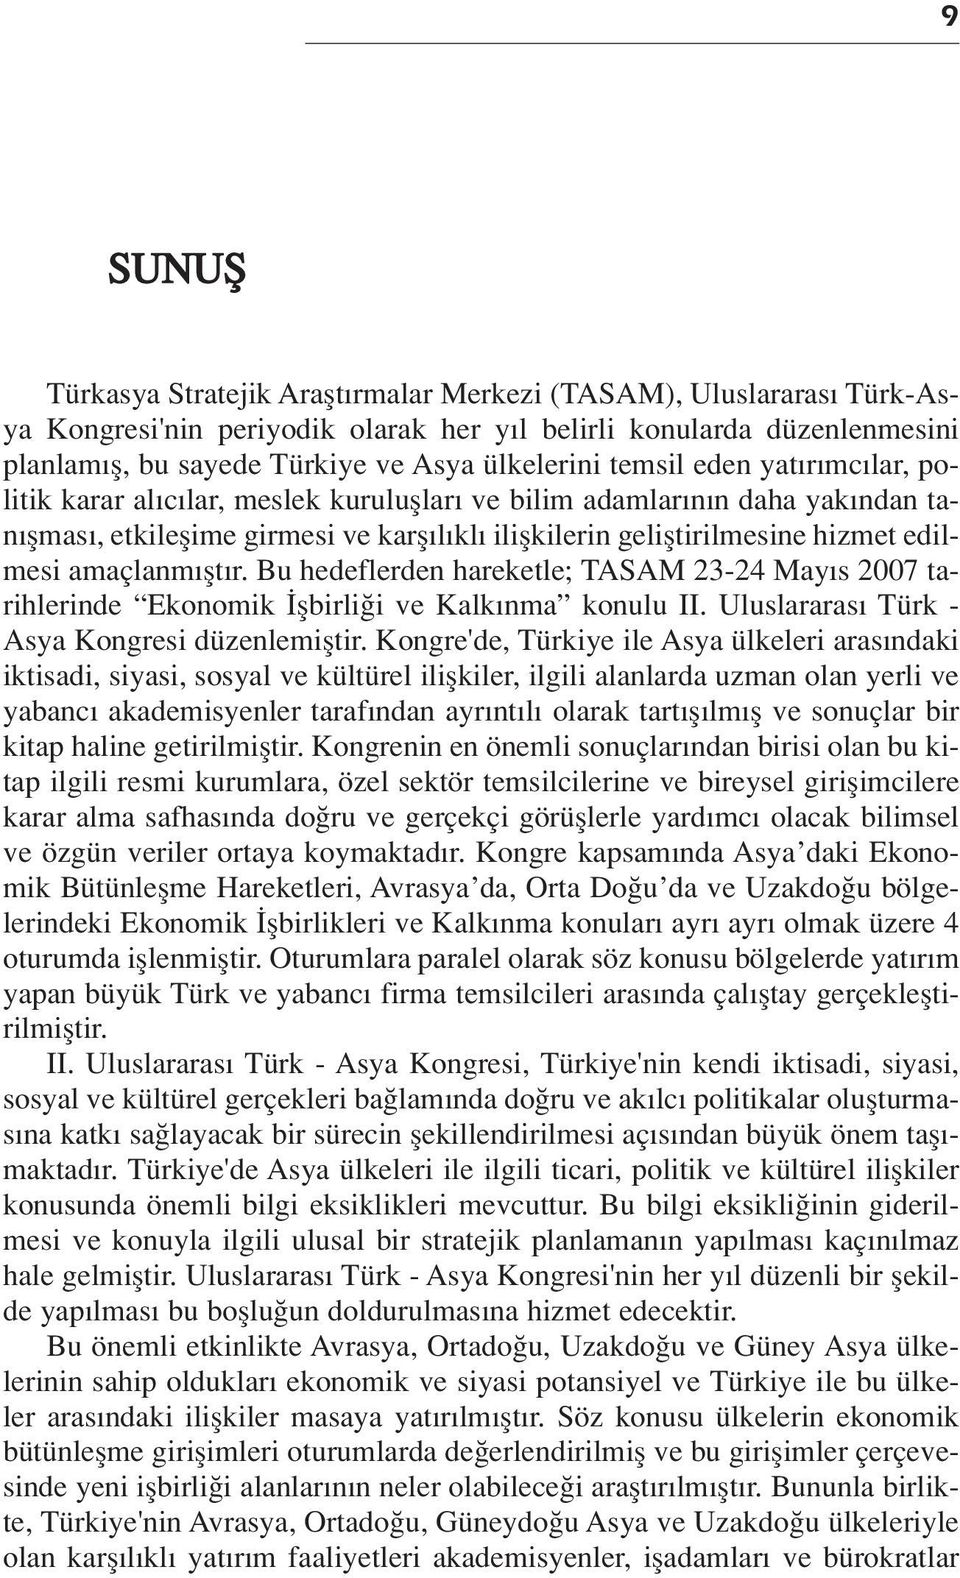 edilmesi amaçlanm flt r. Bu hedeflerden hareketle; TASAM 23-24 May s 2007 tarihlerinde Ekonomik flbirli i ve Kalk nma konulu II. Uluslararas Türk - Asya Kongresi düzenlemifltir.